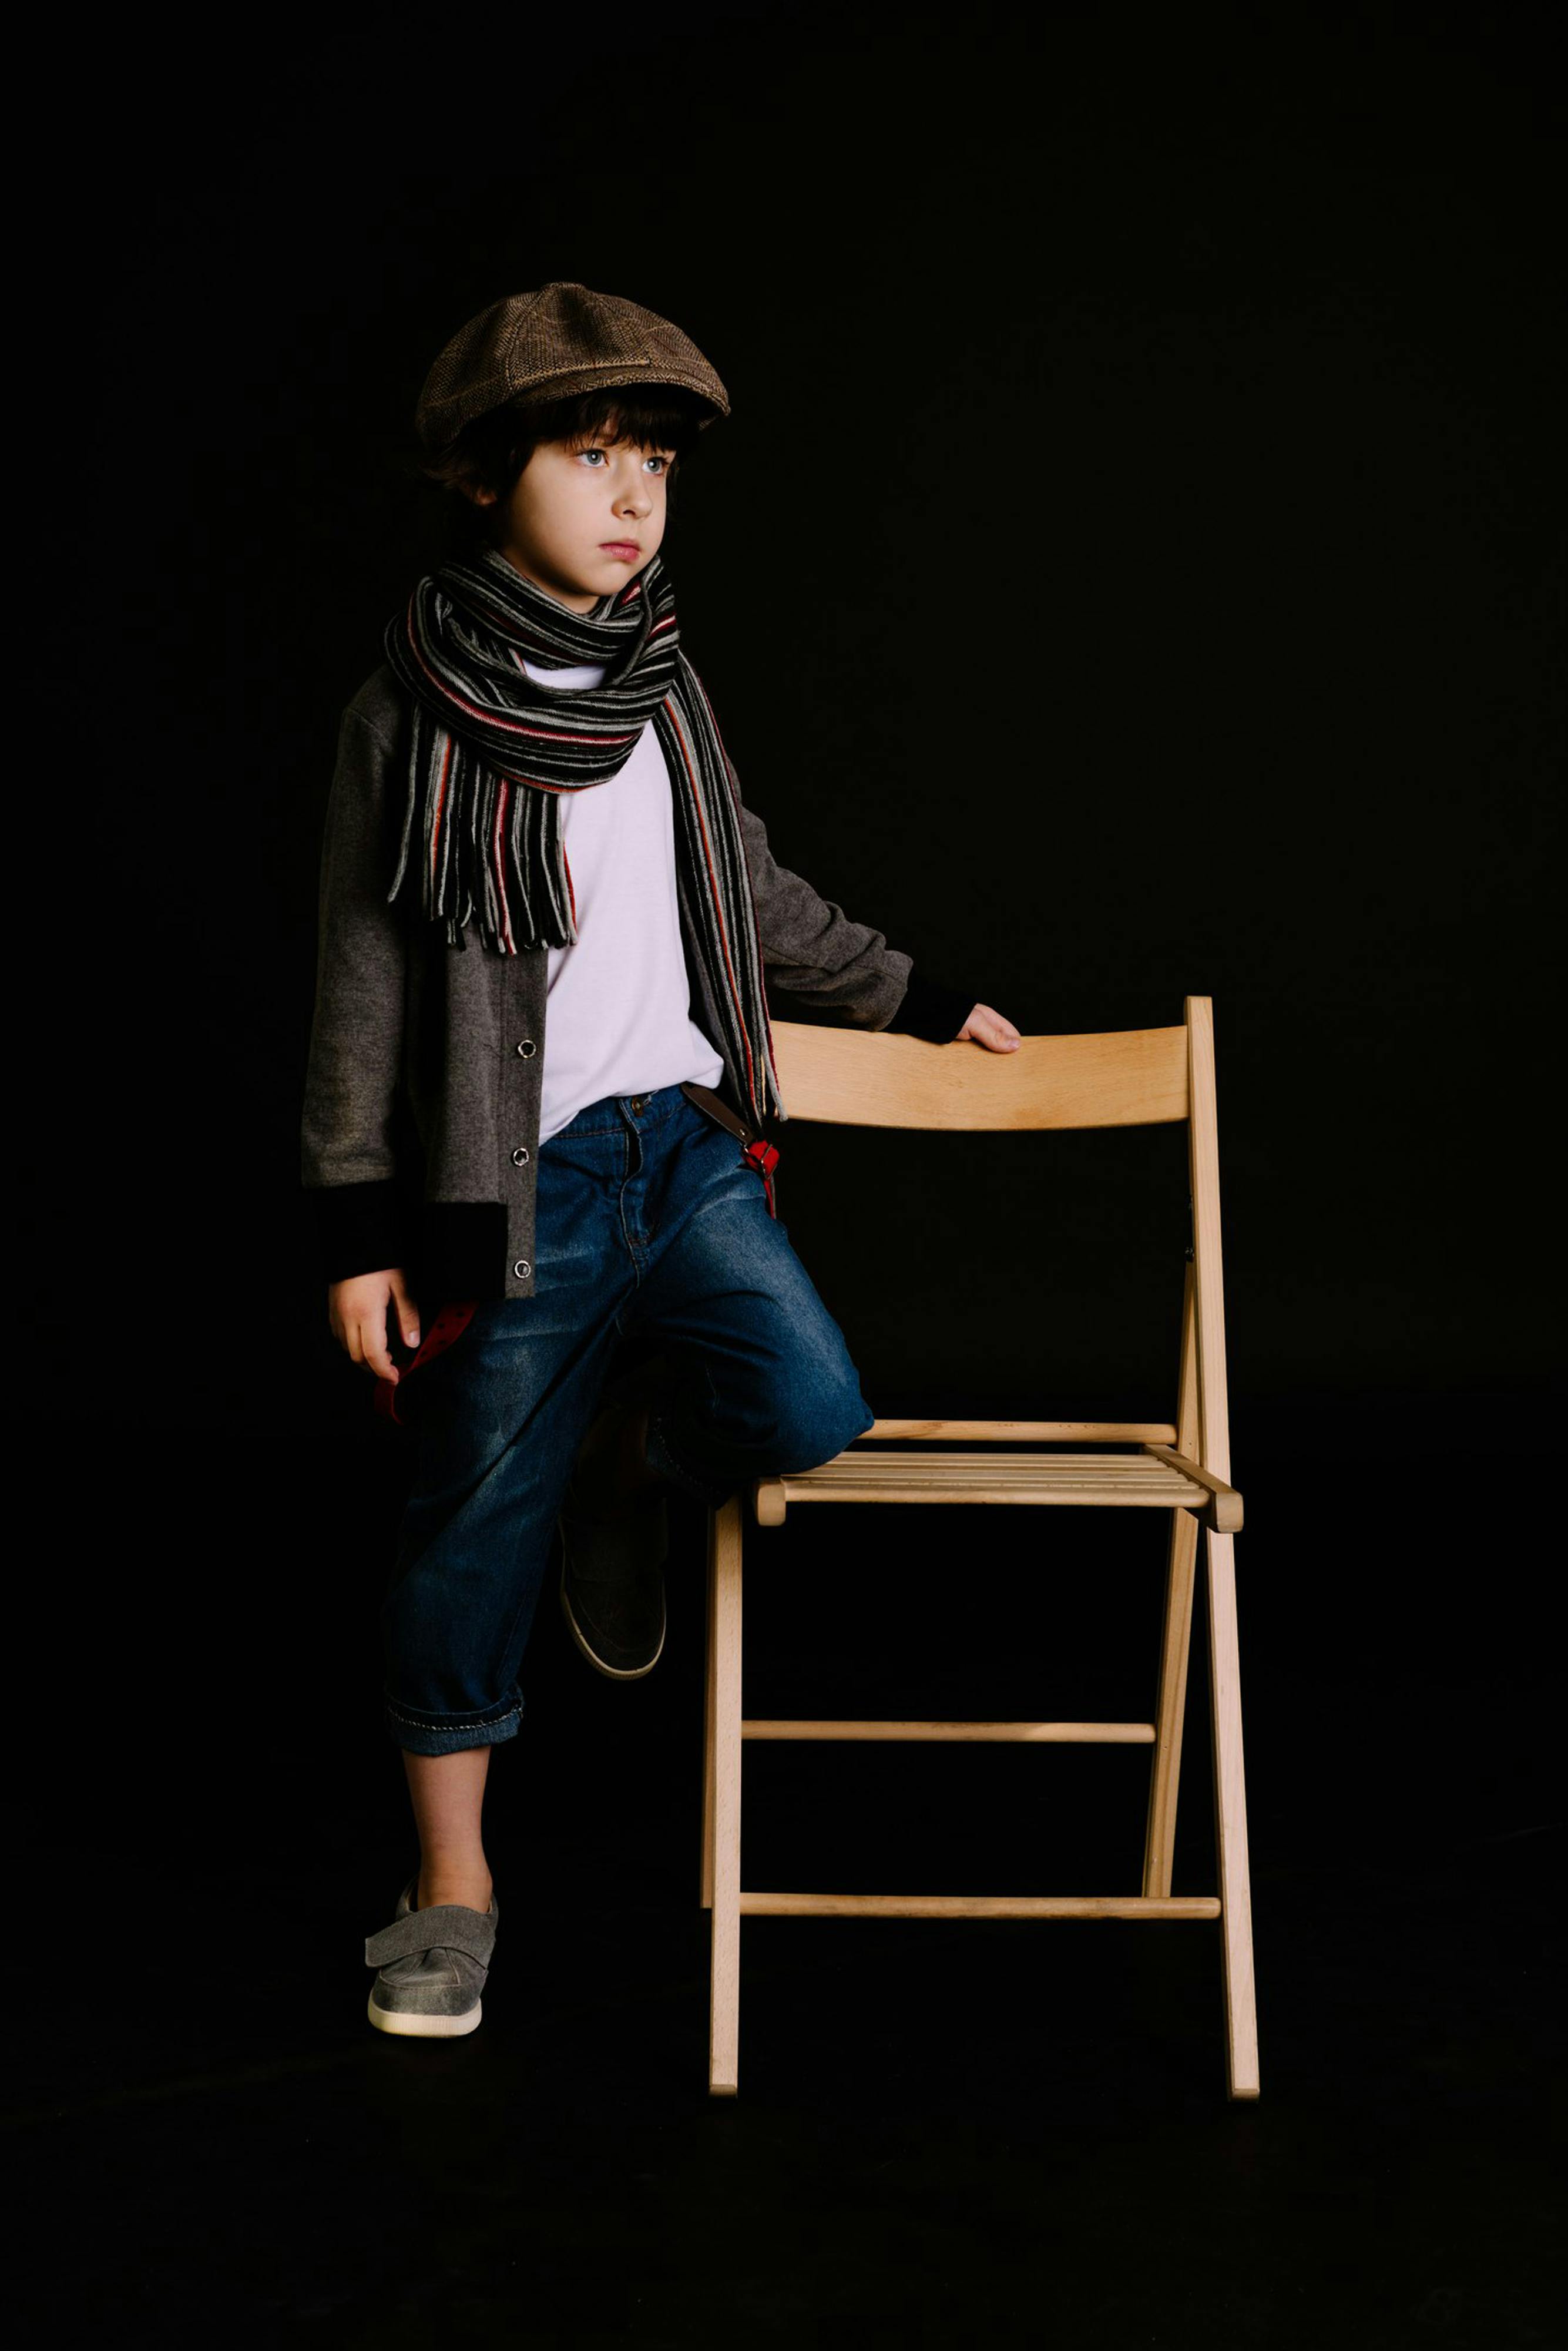 Niño con bufanda de punto | Fuente: Pexels